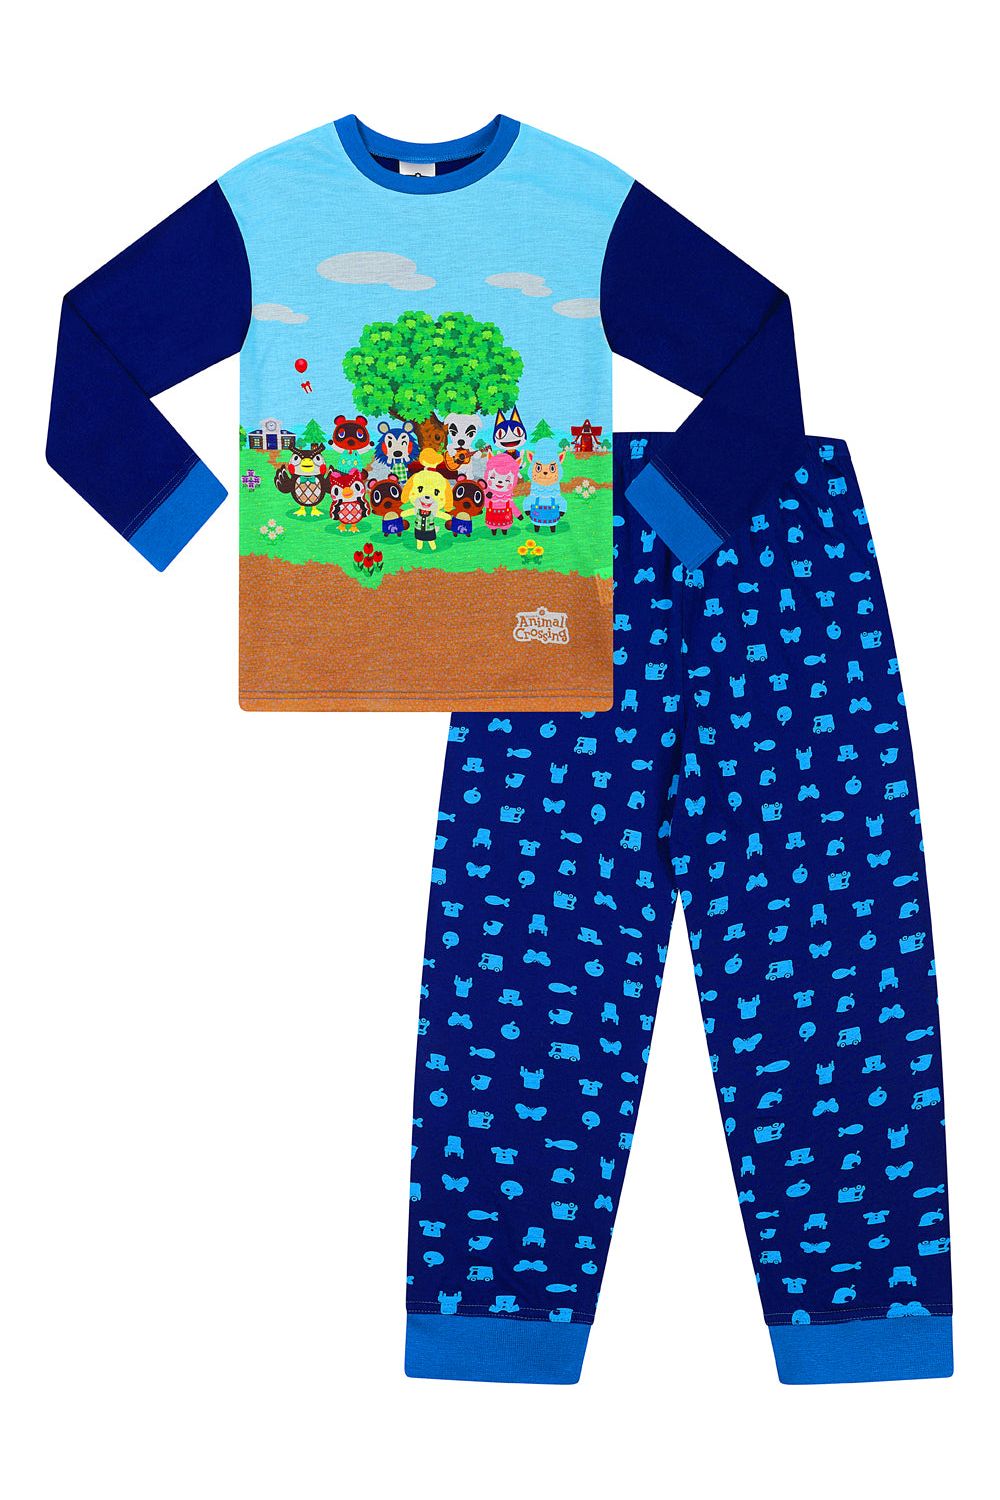 Boys Official Nintendo Animal Crossing Gaming Long Blue Pyjamas - Pyjamas.com